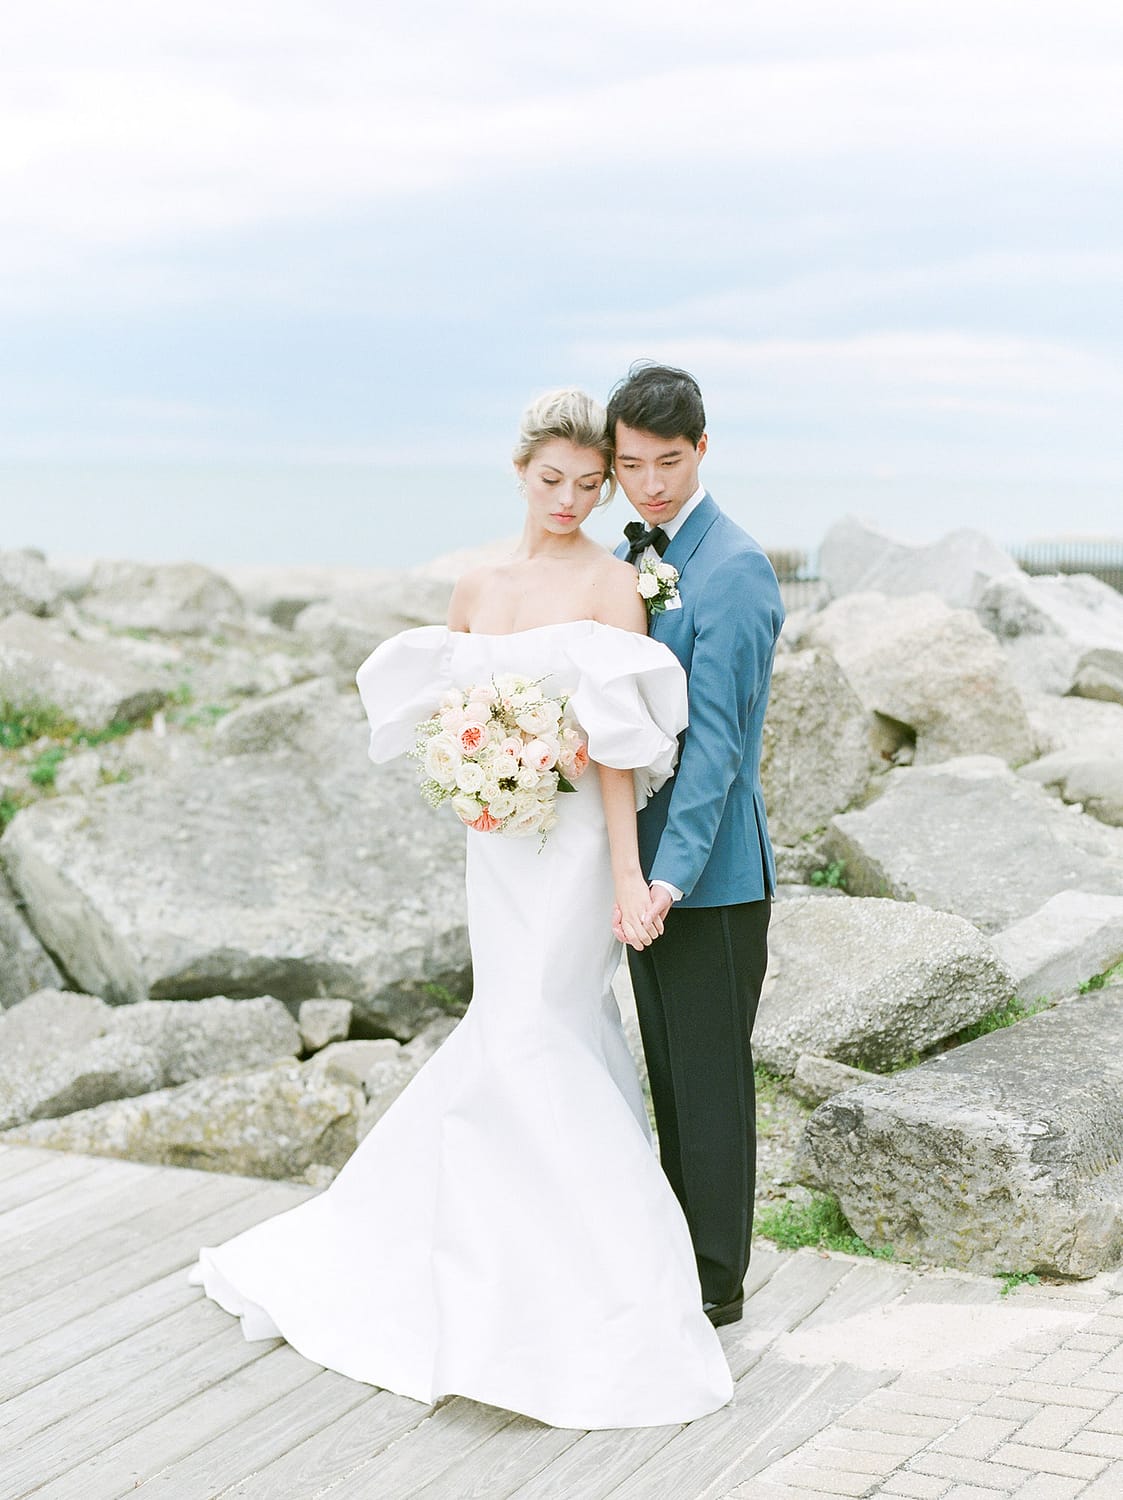 Fotografie-Ideen für Braut und Bräutigam am Hochzeitstag